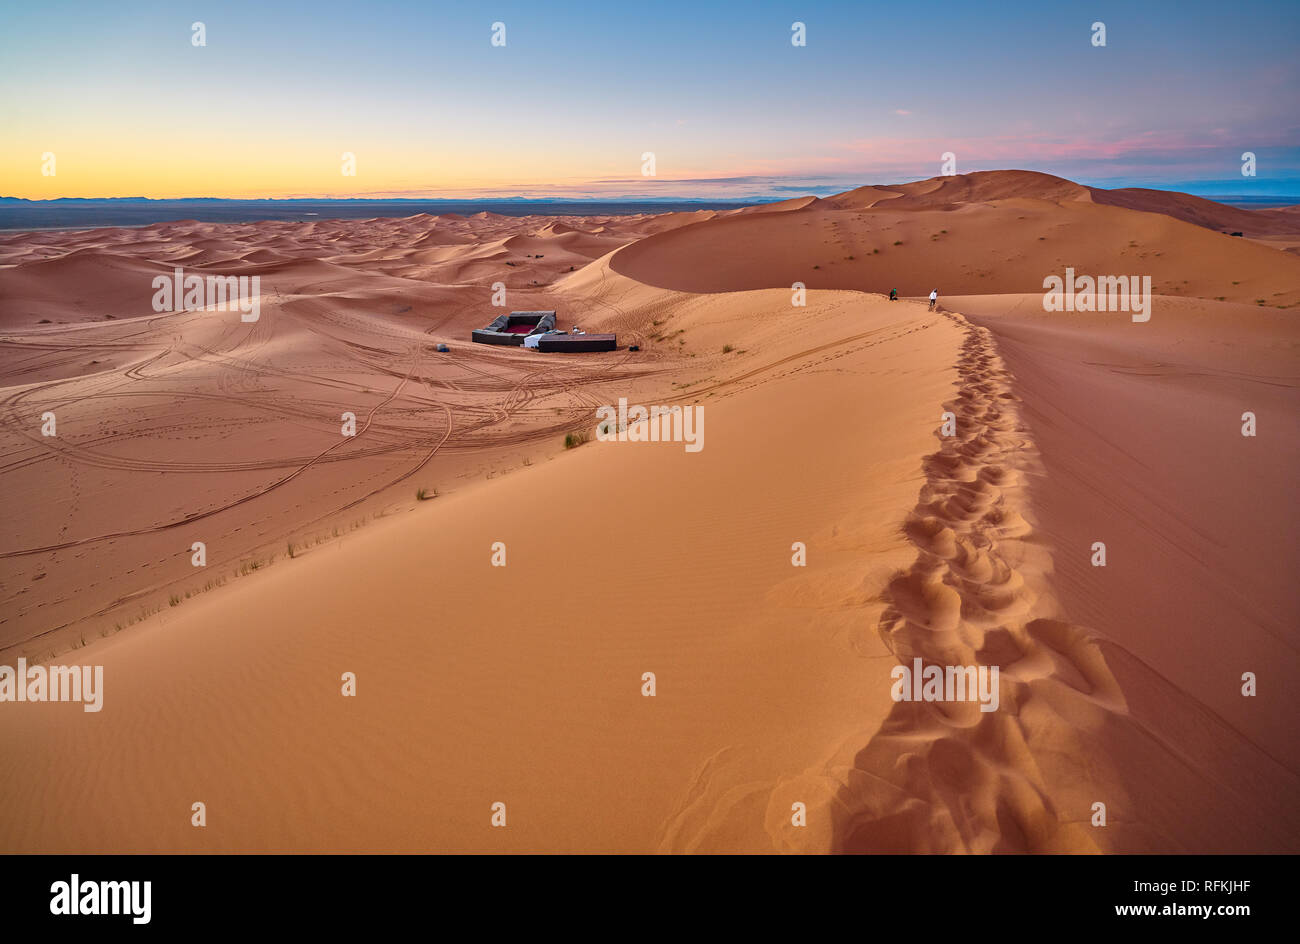 Passi e campo berbero nel deserto all'alba. La foto del paesaggio desertico è stata scattata a Erg Chebbi vicino a Merzouga, Marocco sahariano. Foto Stock